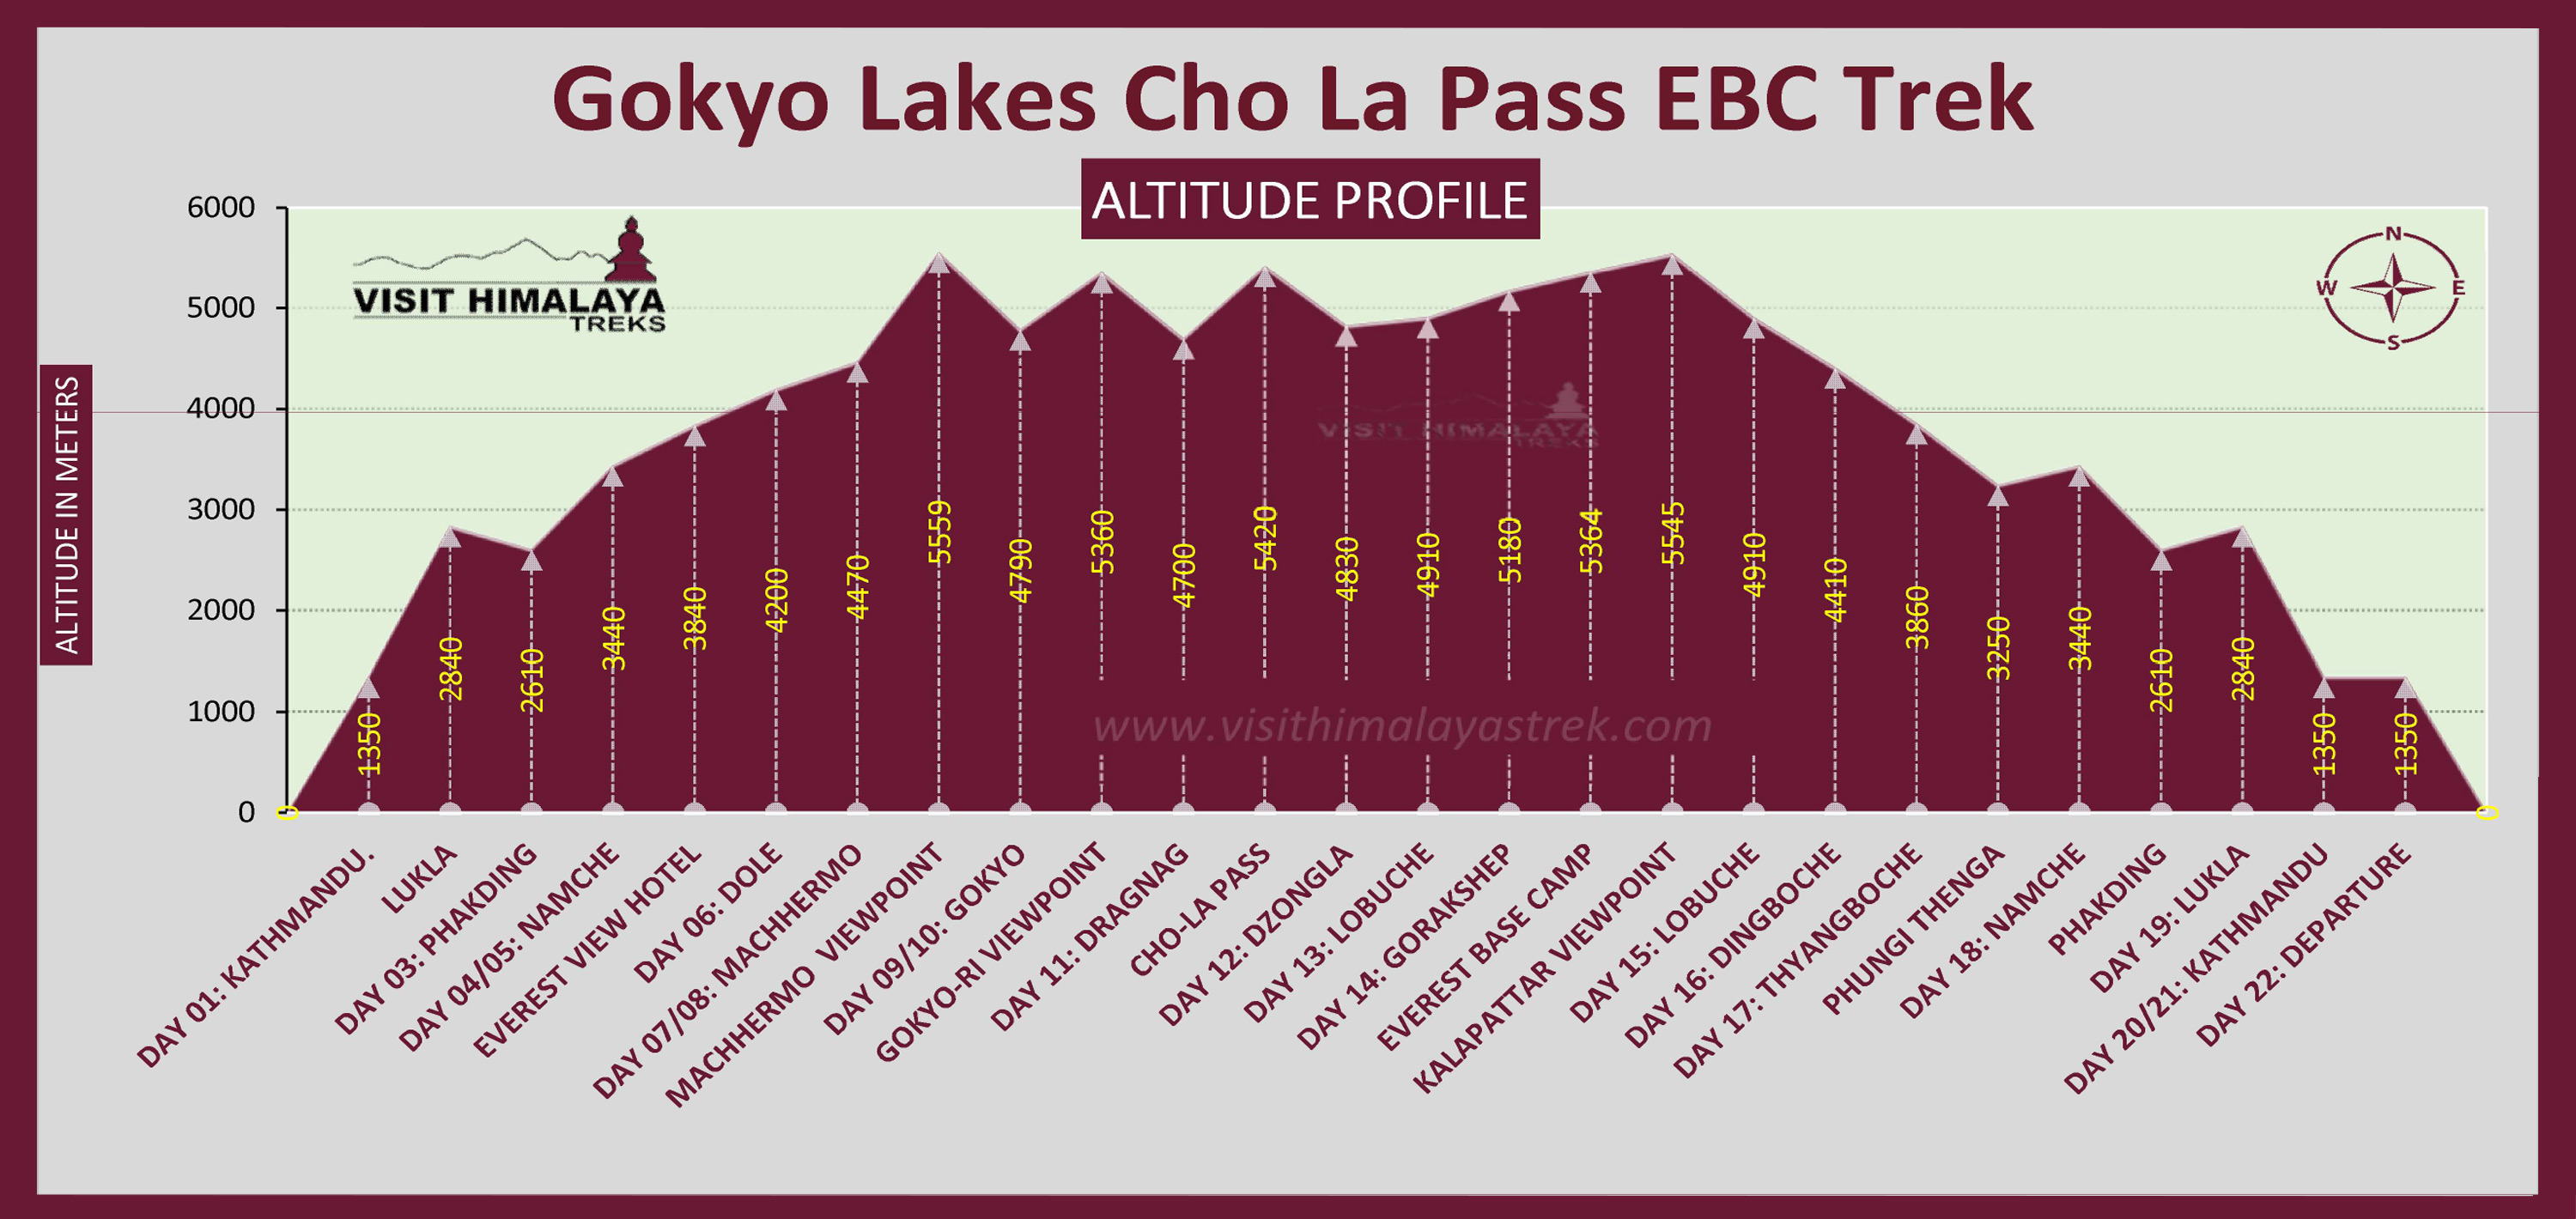 Gokyo Lake Chola Pass Ebc Trek